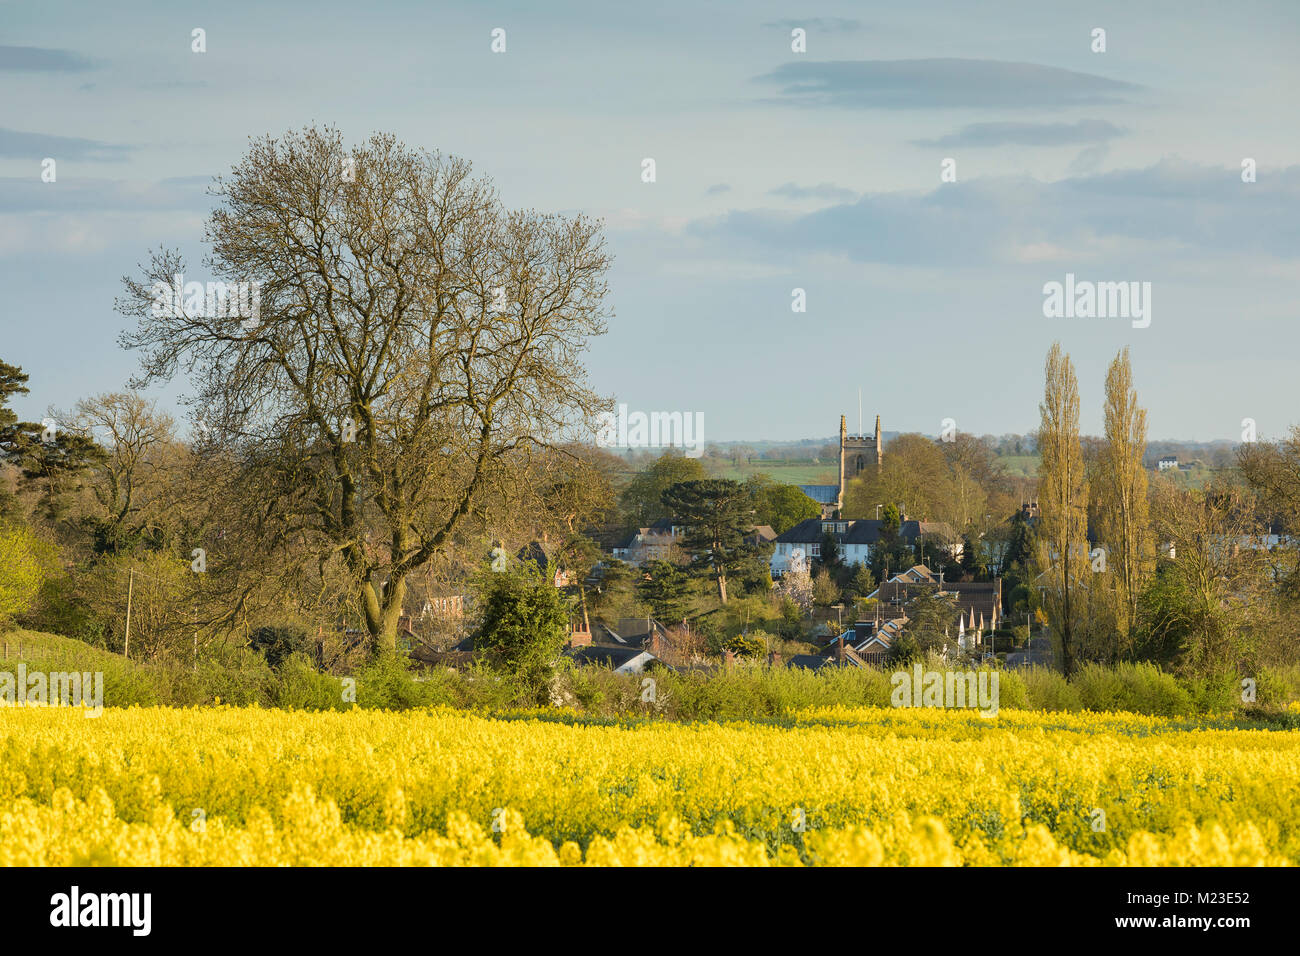 Une image de la village rural de Kibworth Harcourt, Leicestershire sur une belle soirée de printemps, England, UK Banque D'Images